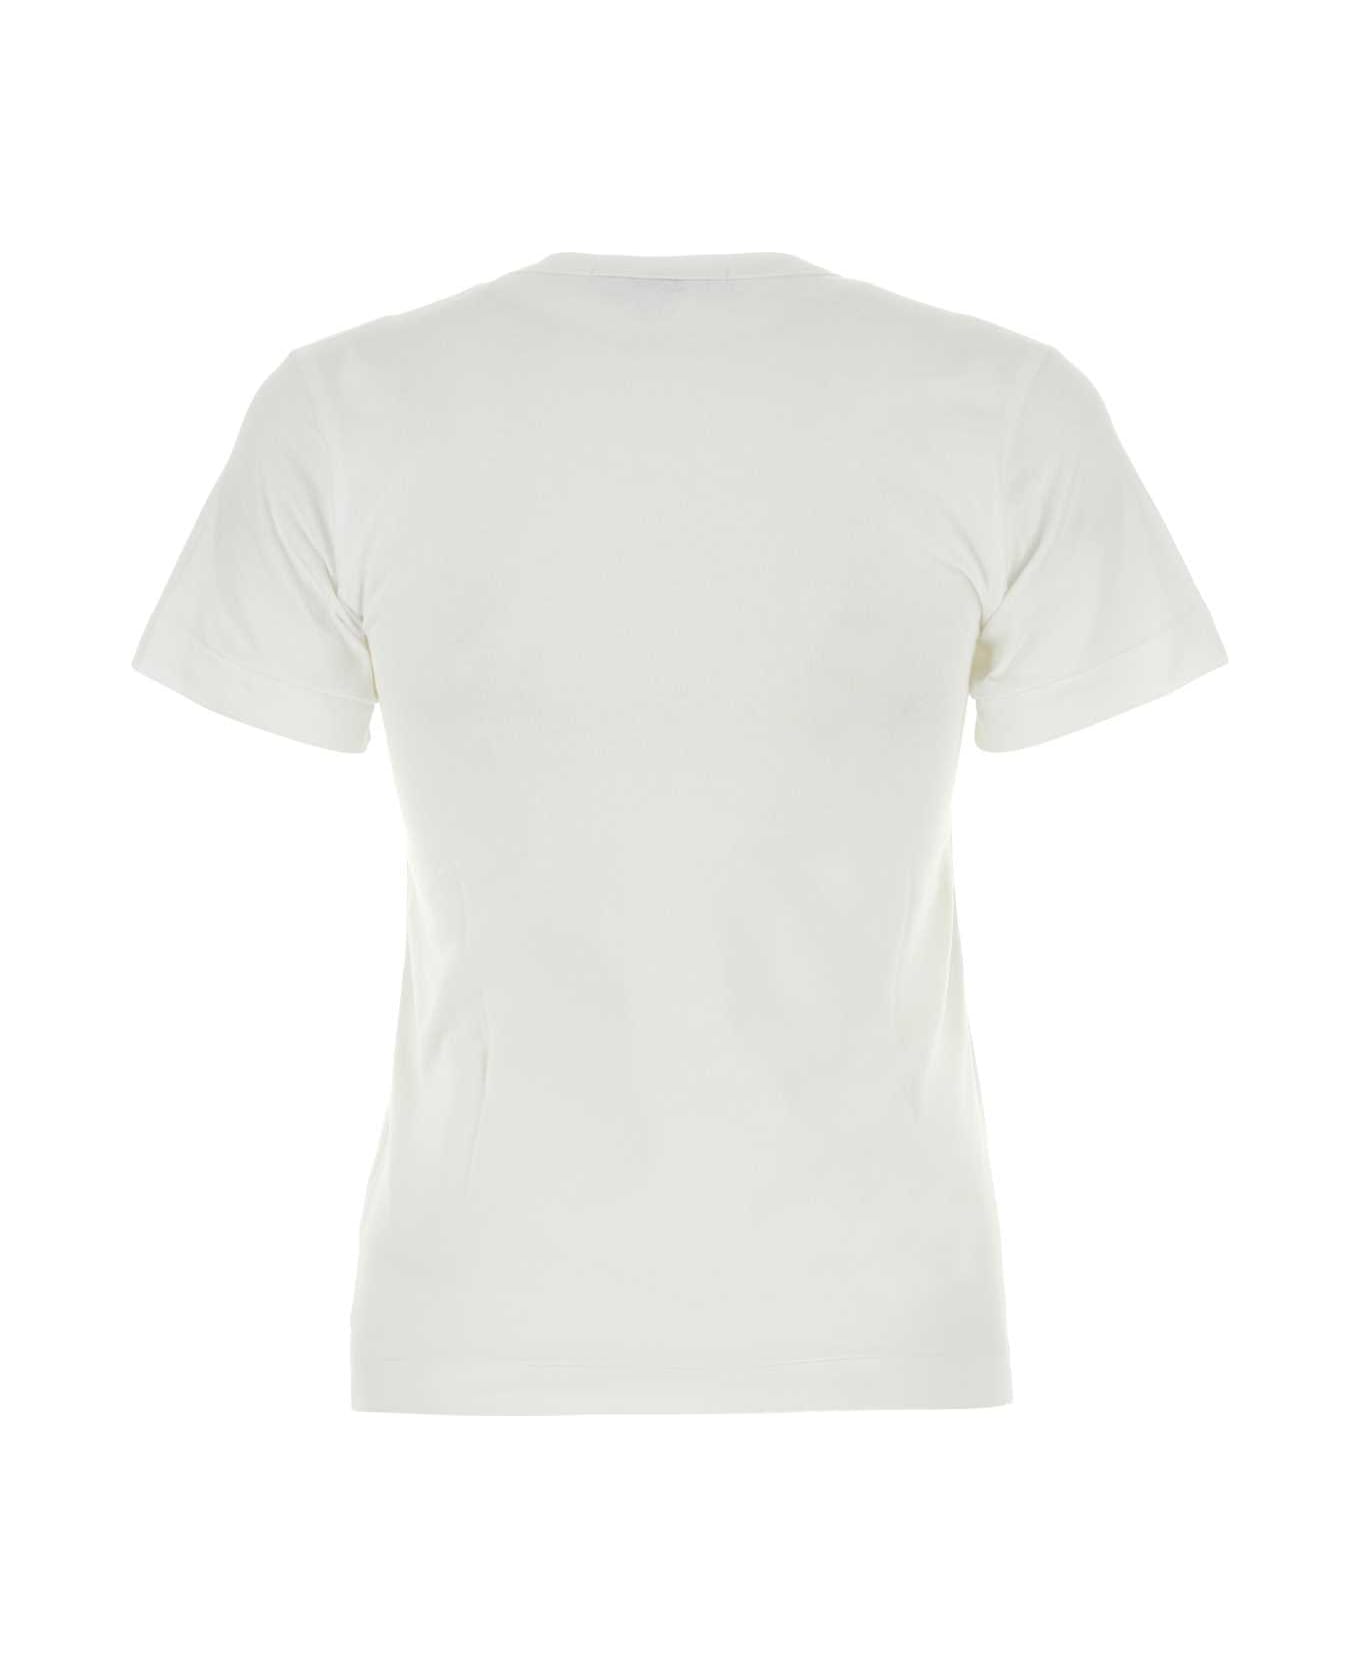 Comme des Garçons Play White Cotton T-shirt - WHITE Tシャツ